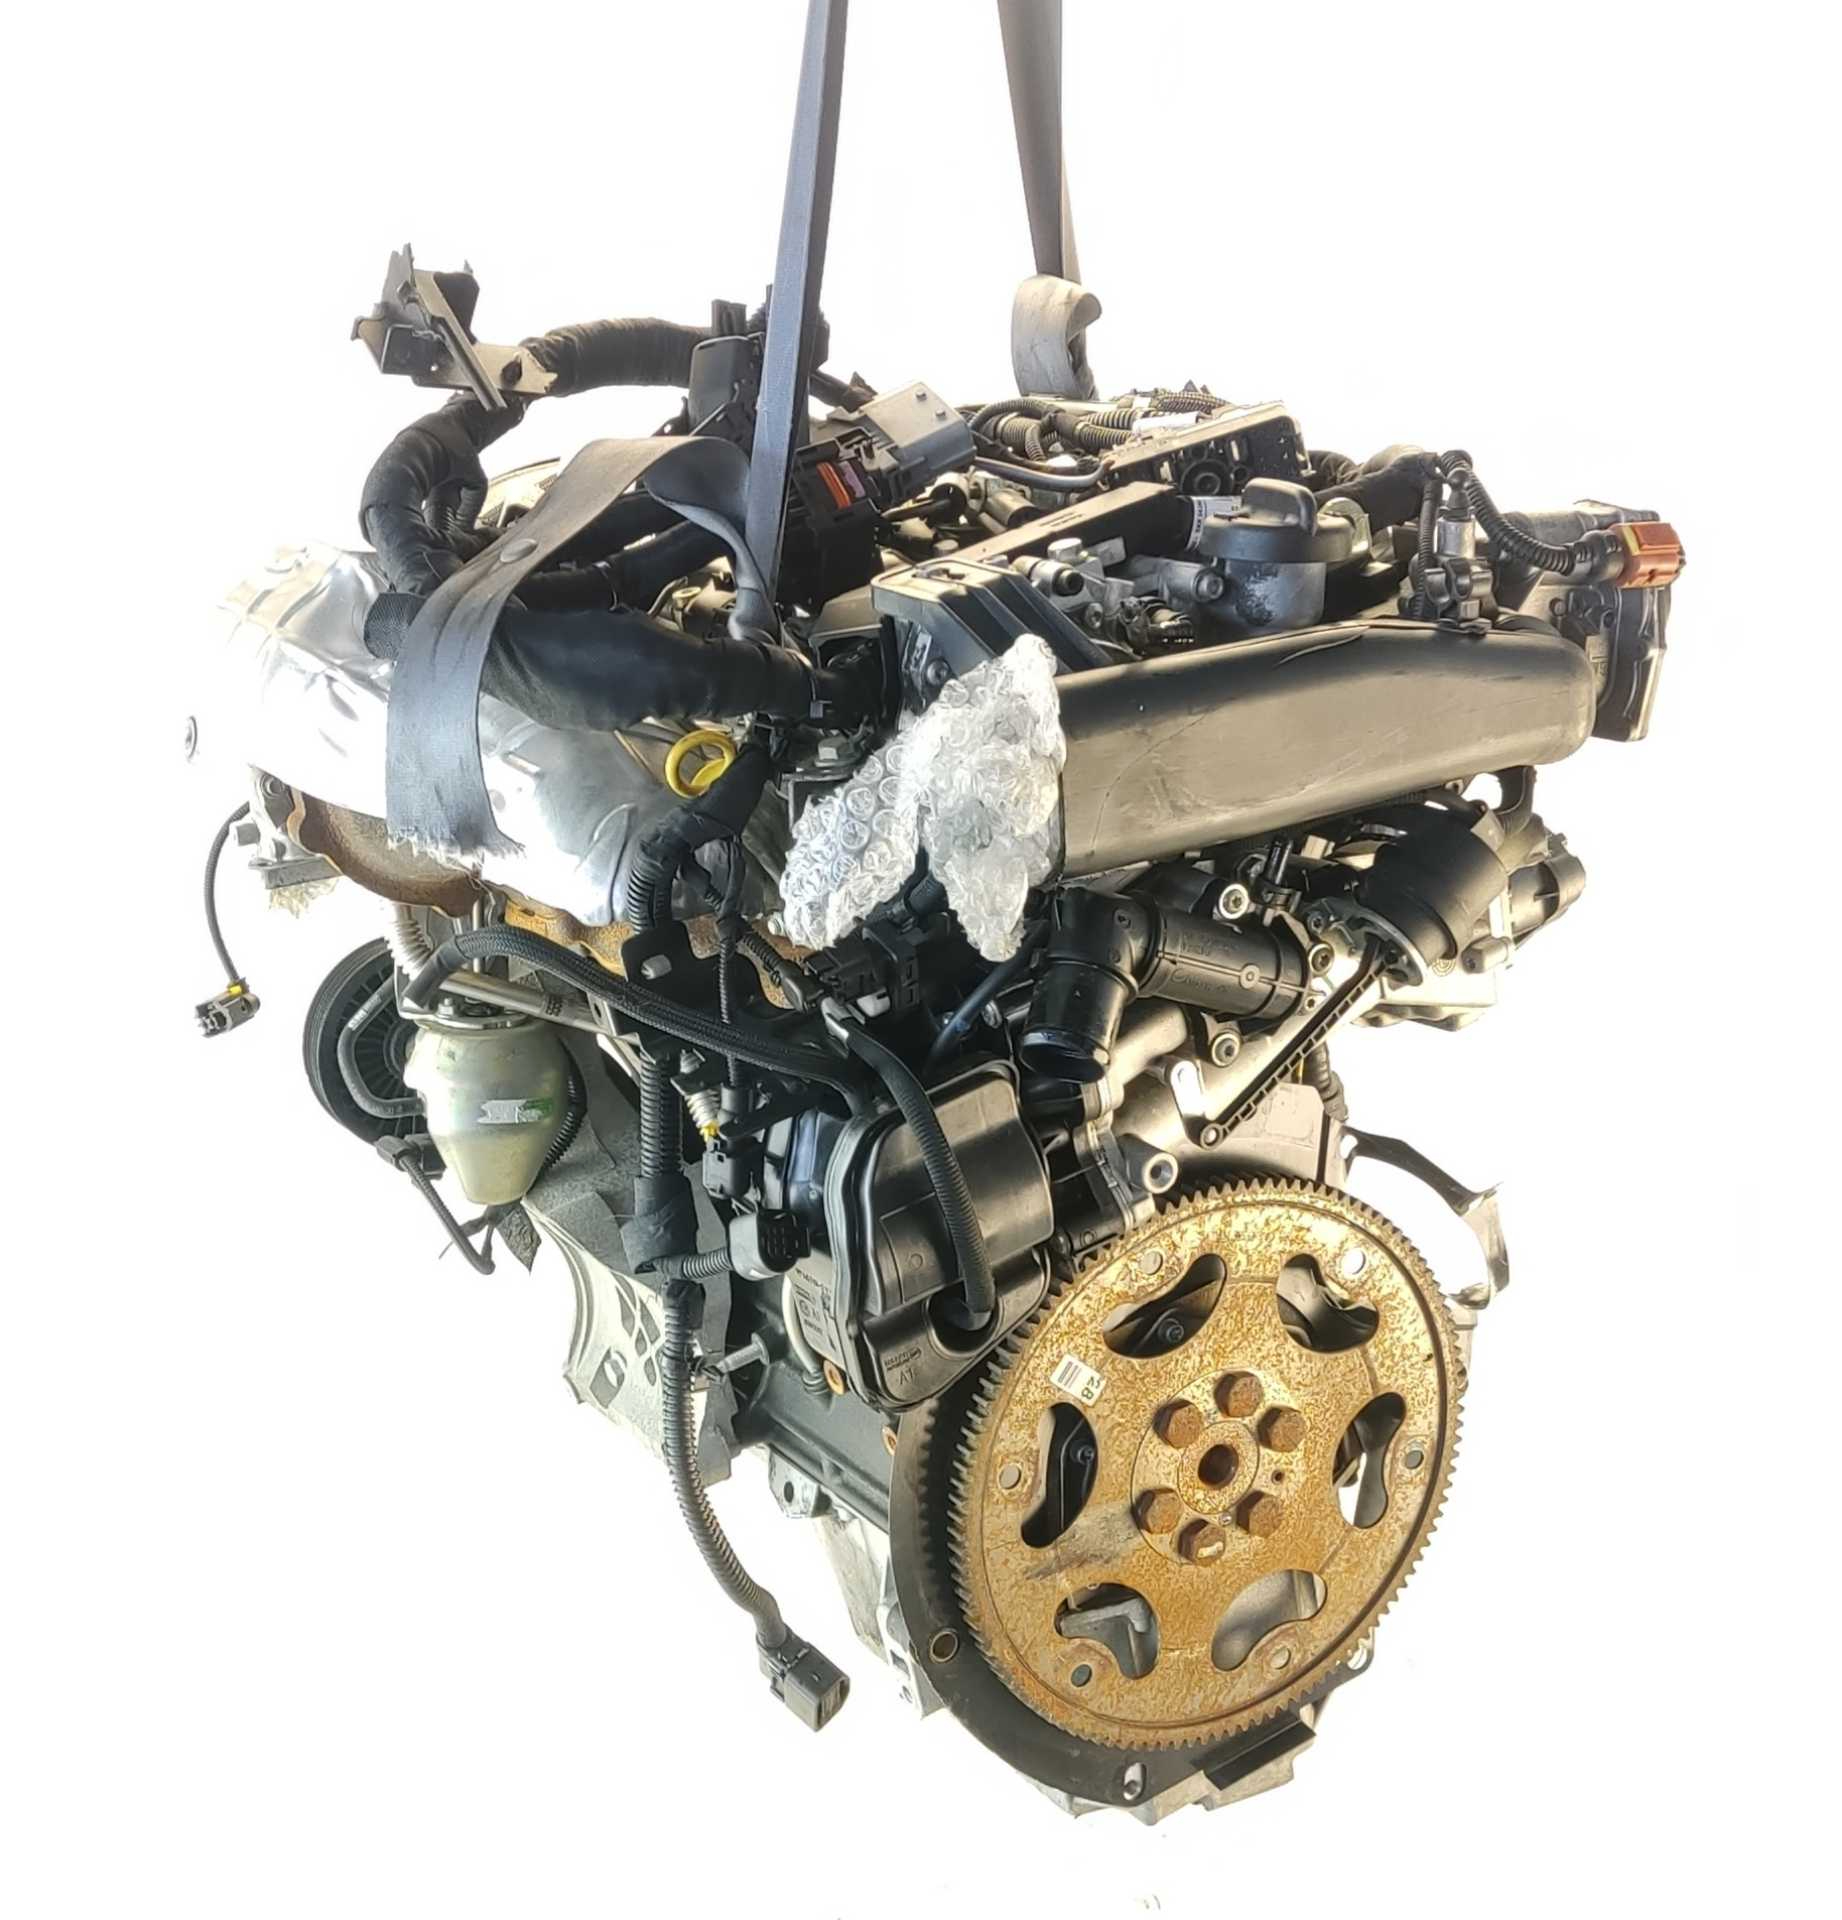 MOTOR OPEL ASTRA J 2.0 CDTI (68) (121 KW / 165 CV) (06.2011 - 10.2015)